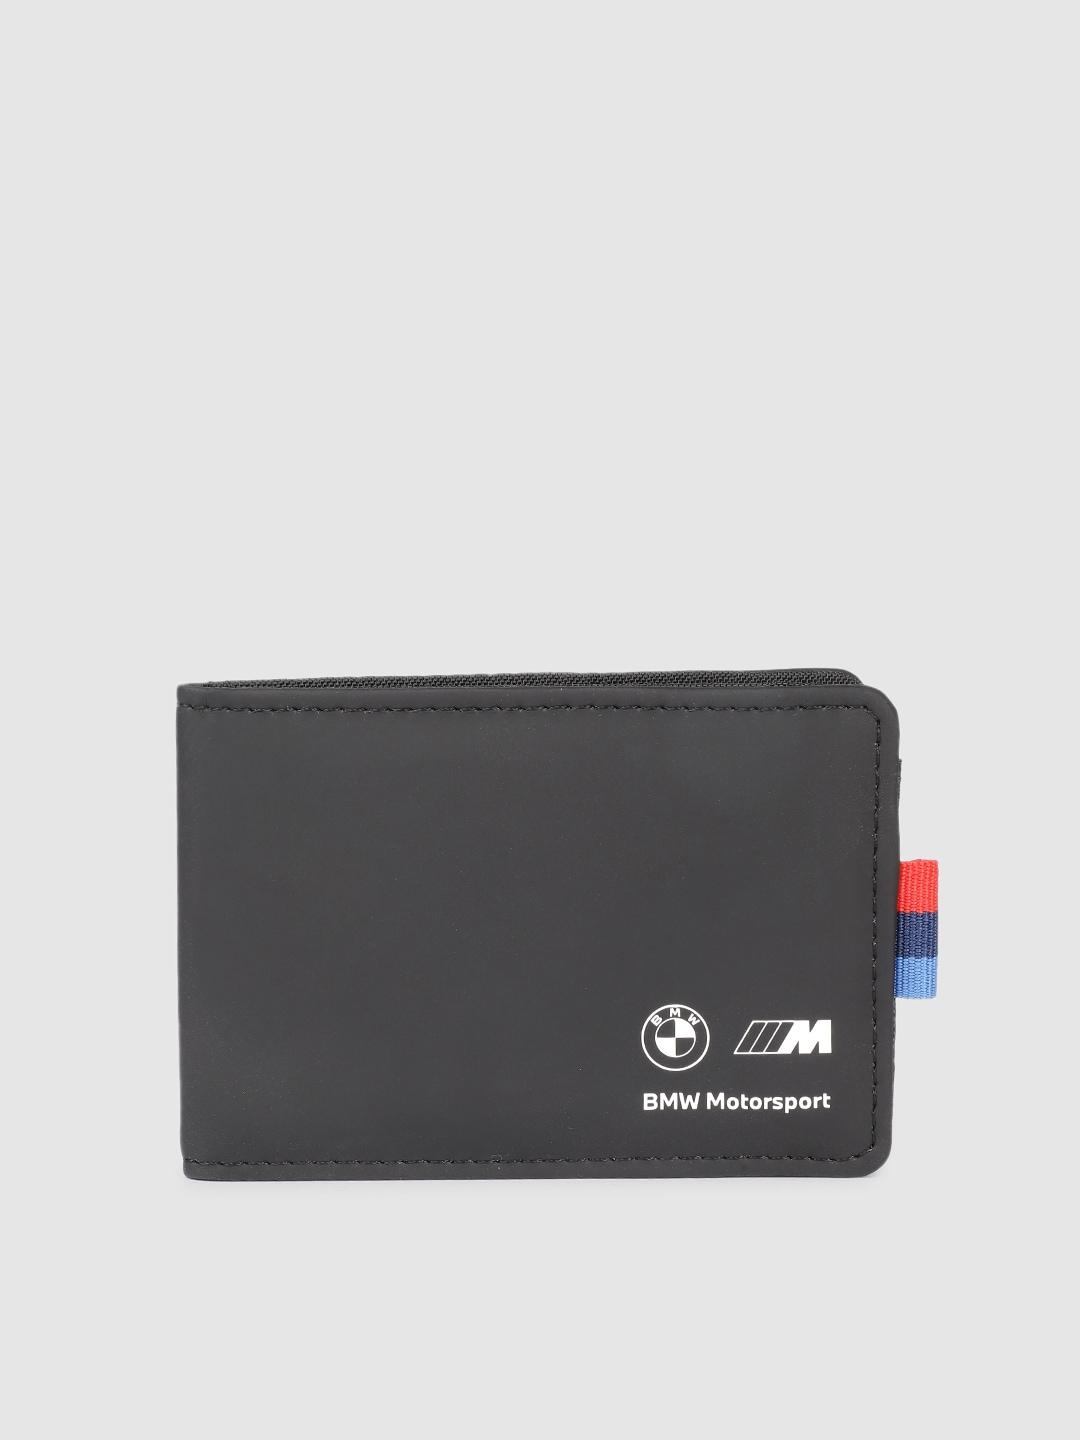 PUMA Motorsport Unisex BMW Card Holder